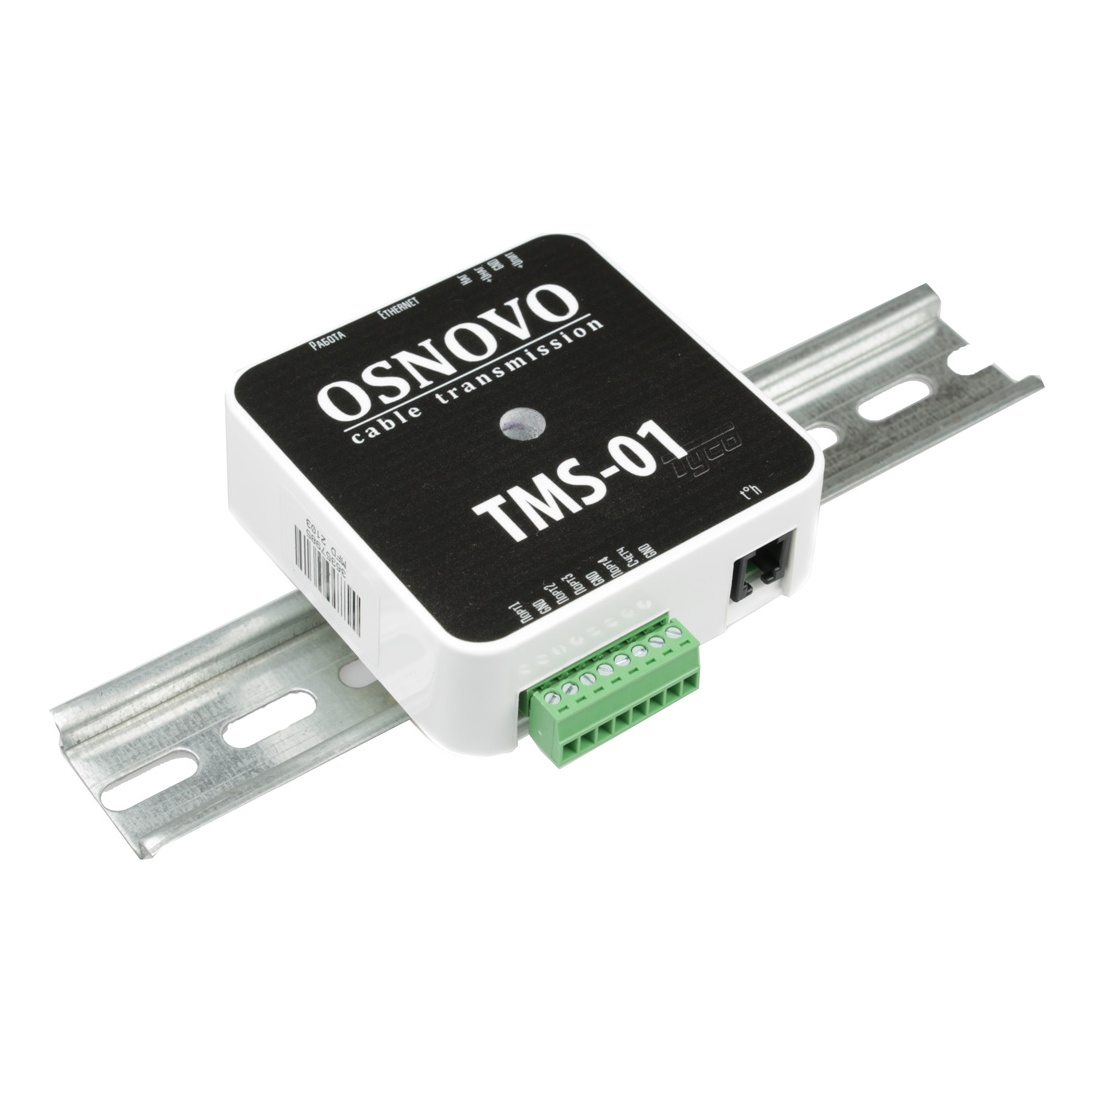 OSNOVO TMS-01 Контроллер для организации системы мониторинга посредством сети Ethernet